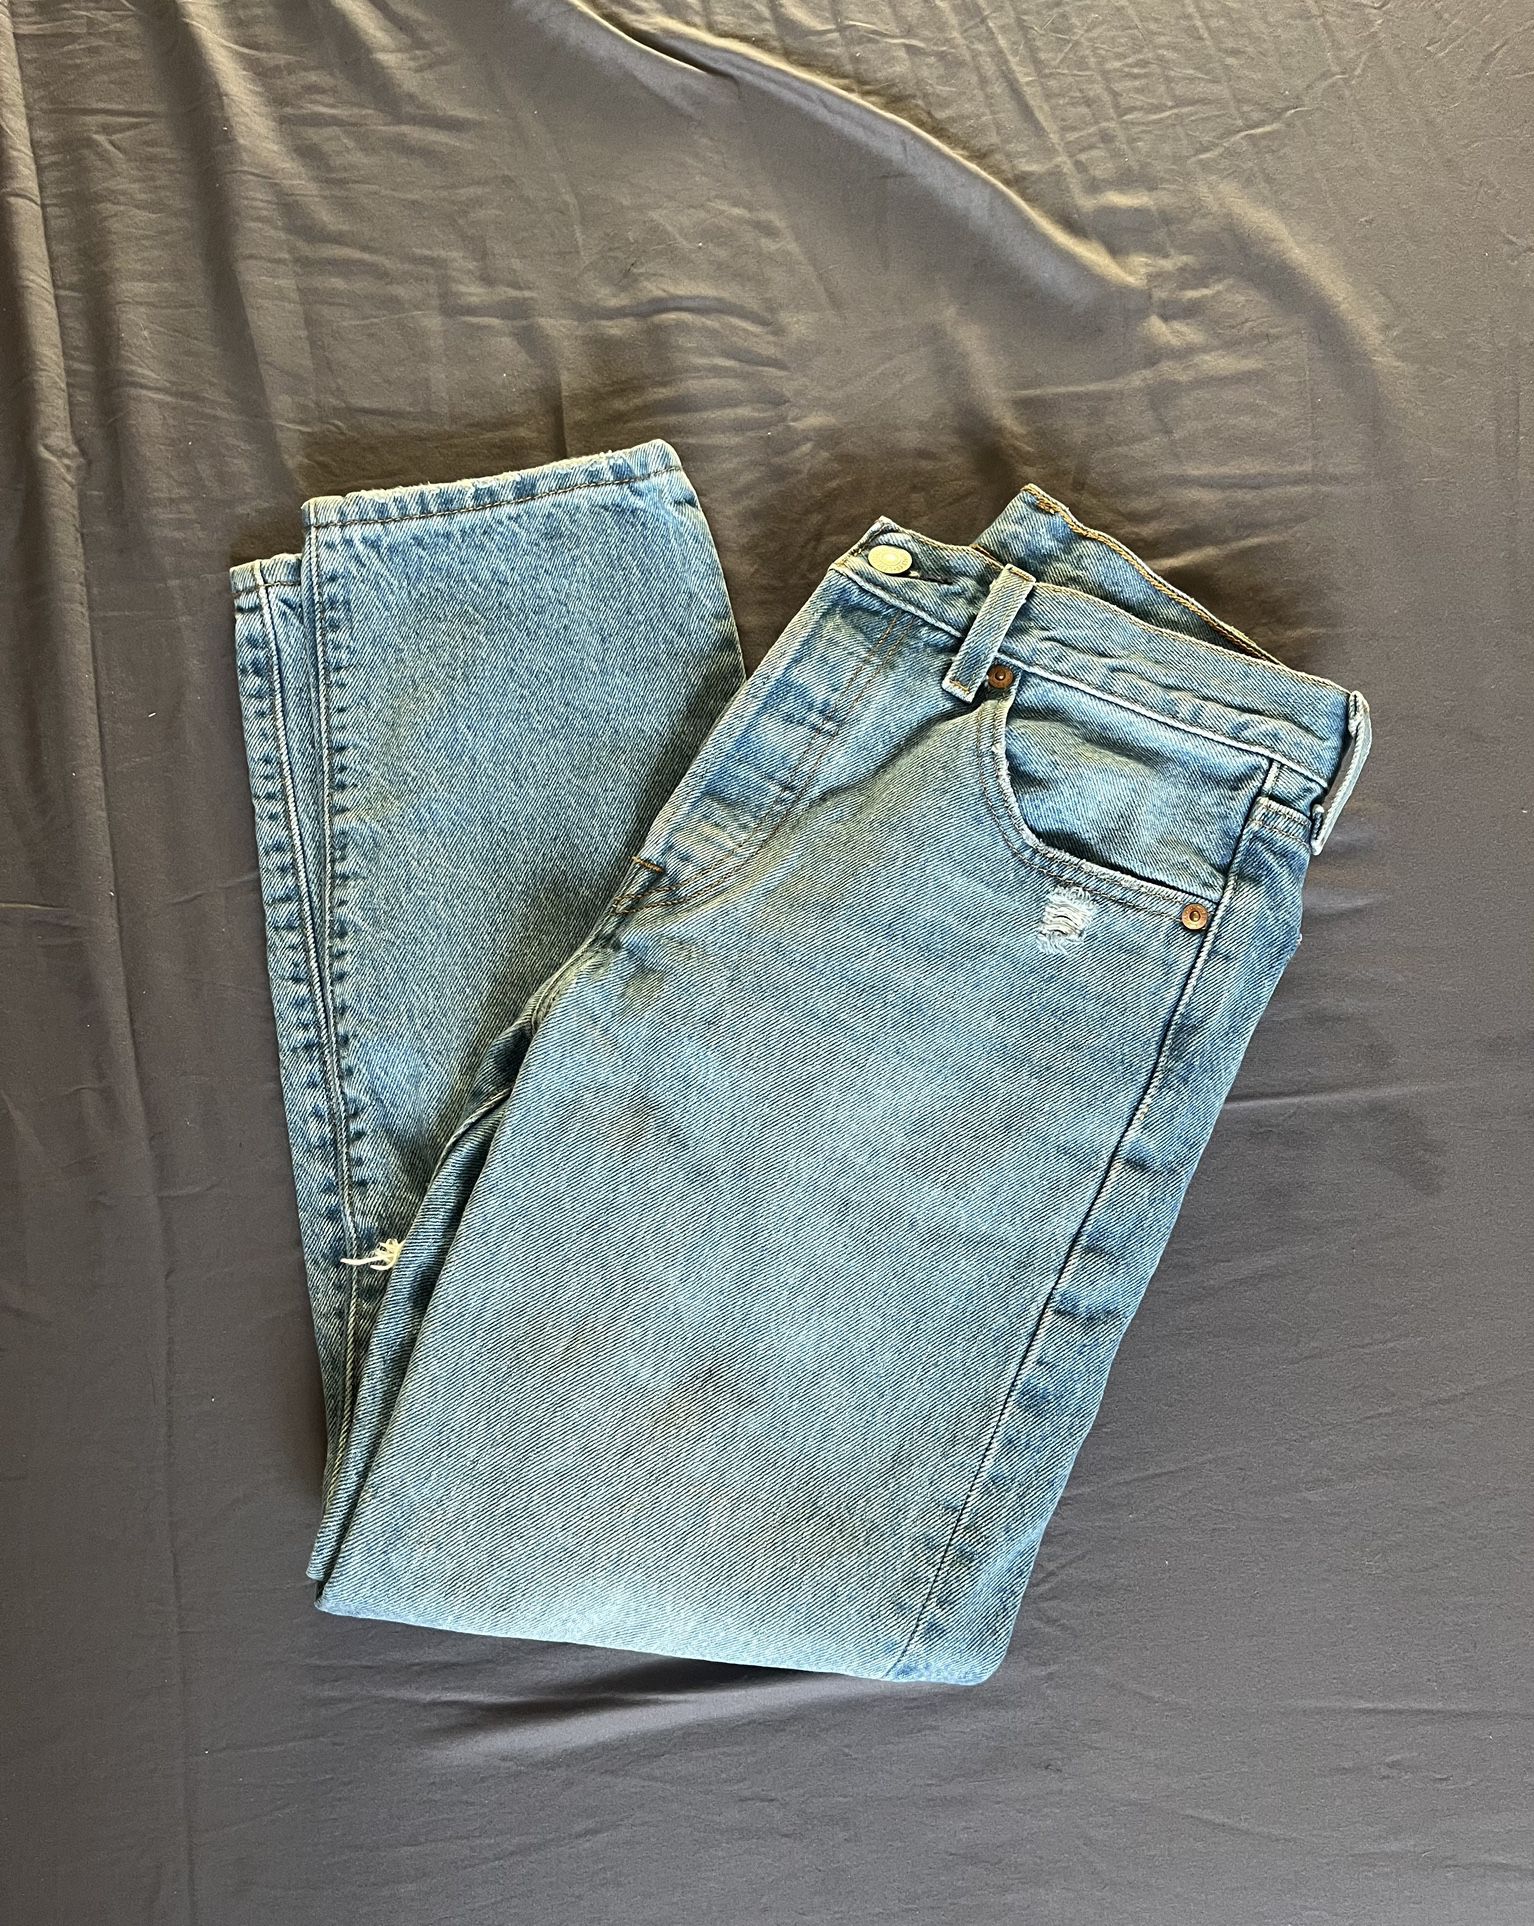 Levi’s 501 Crop Jeans 